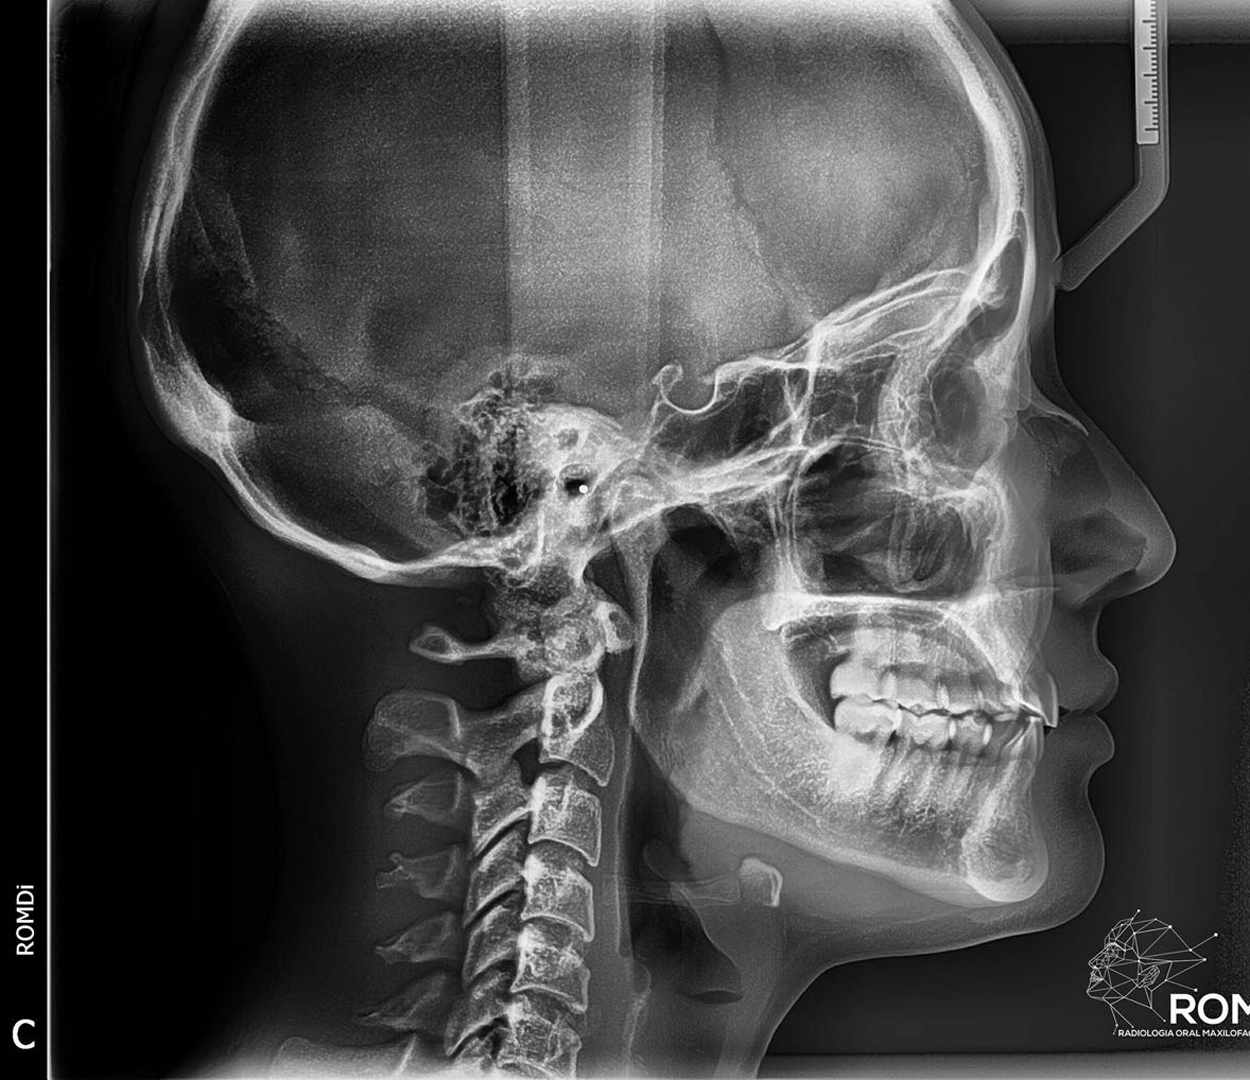 Radiografía lateral de cráneo